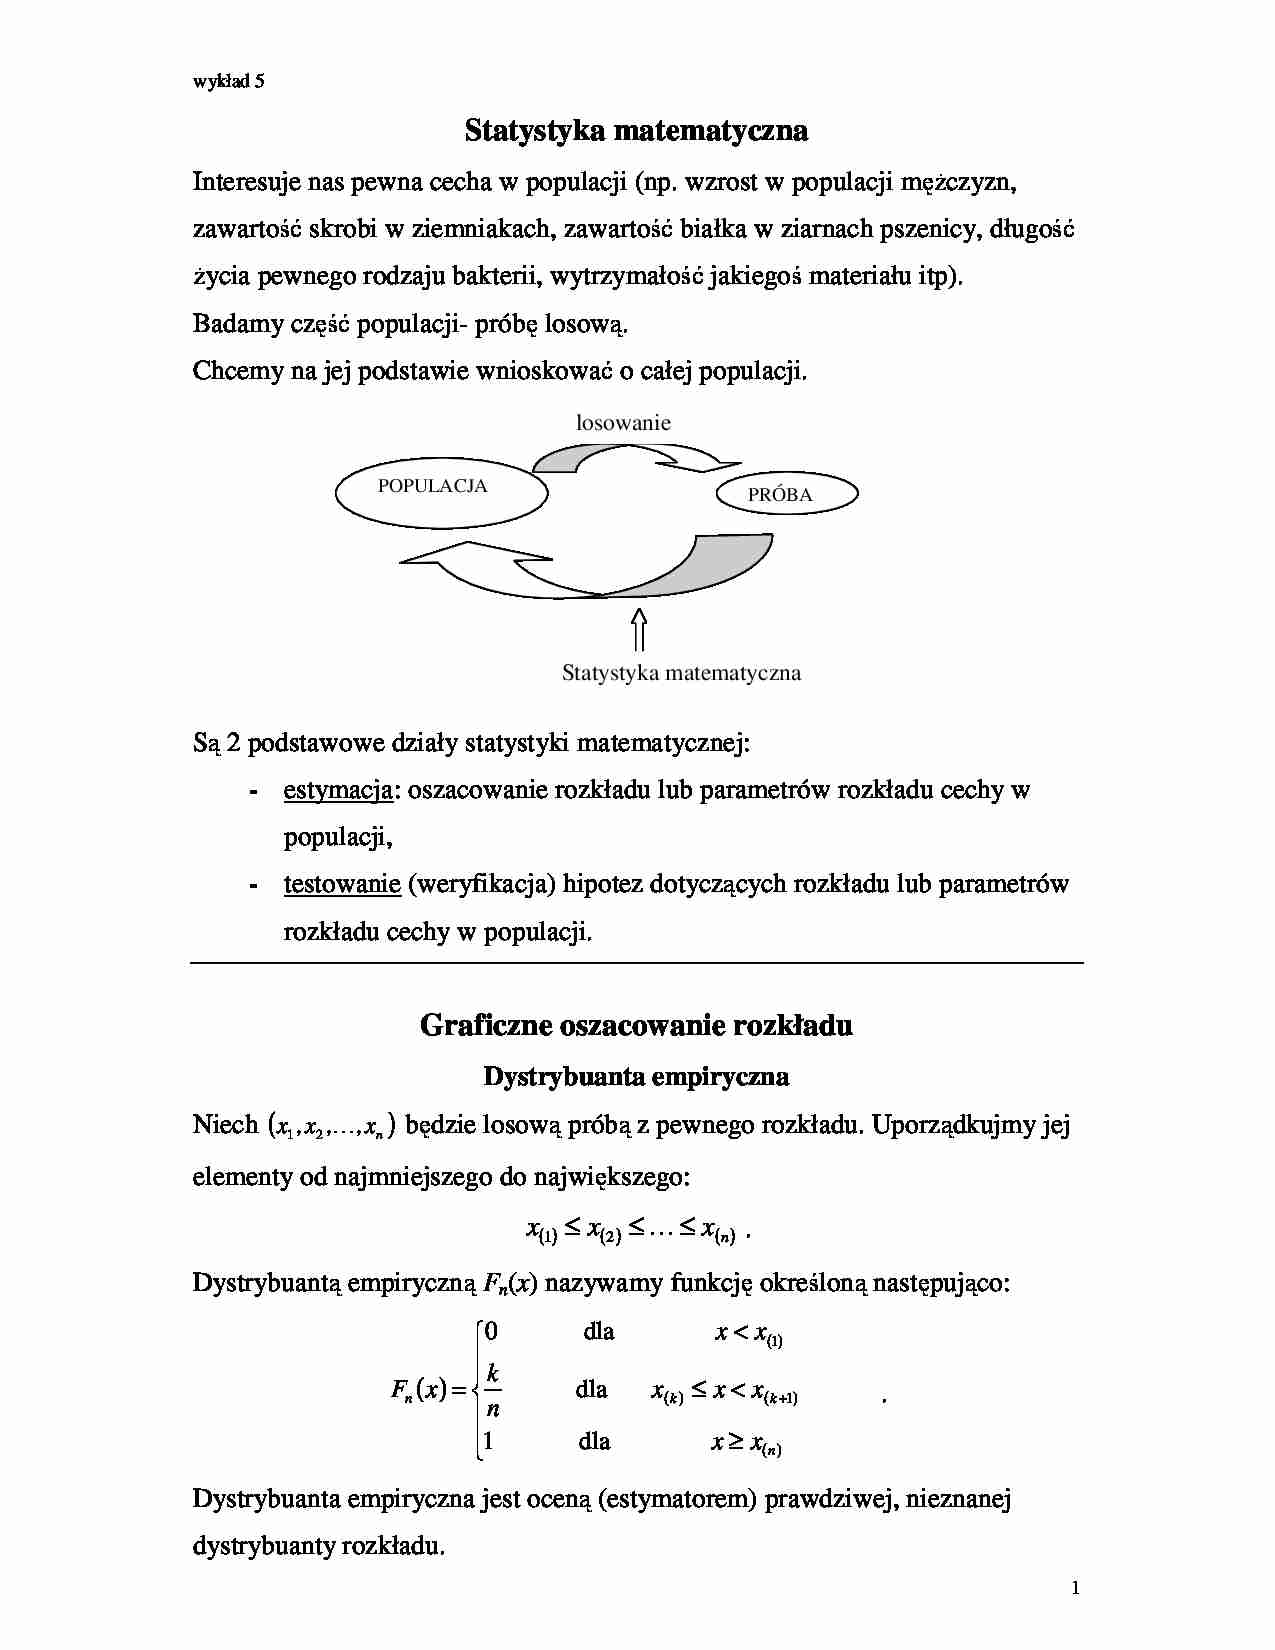 Statystyka matematyczna -wykład (sem. IV) (3) - strona 1